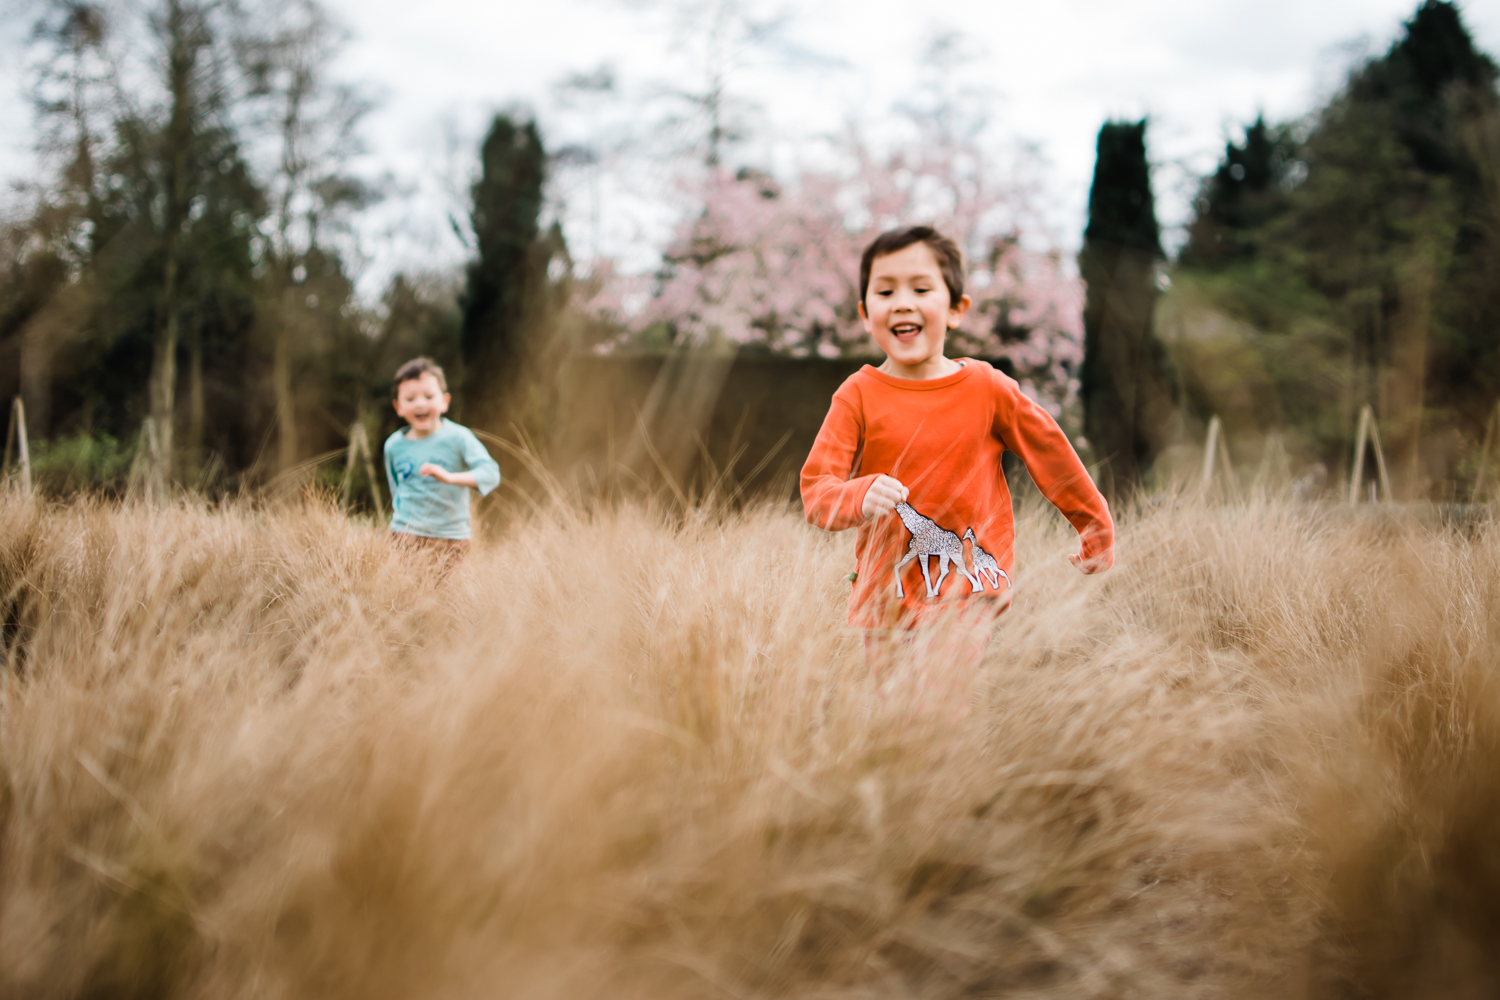 Children running through a grassy field